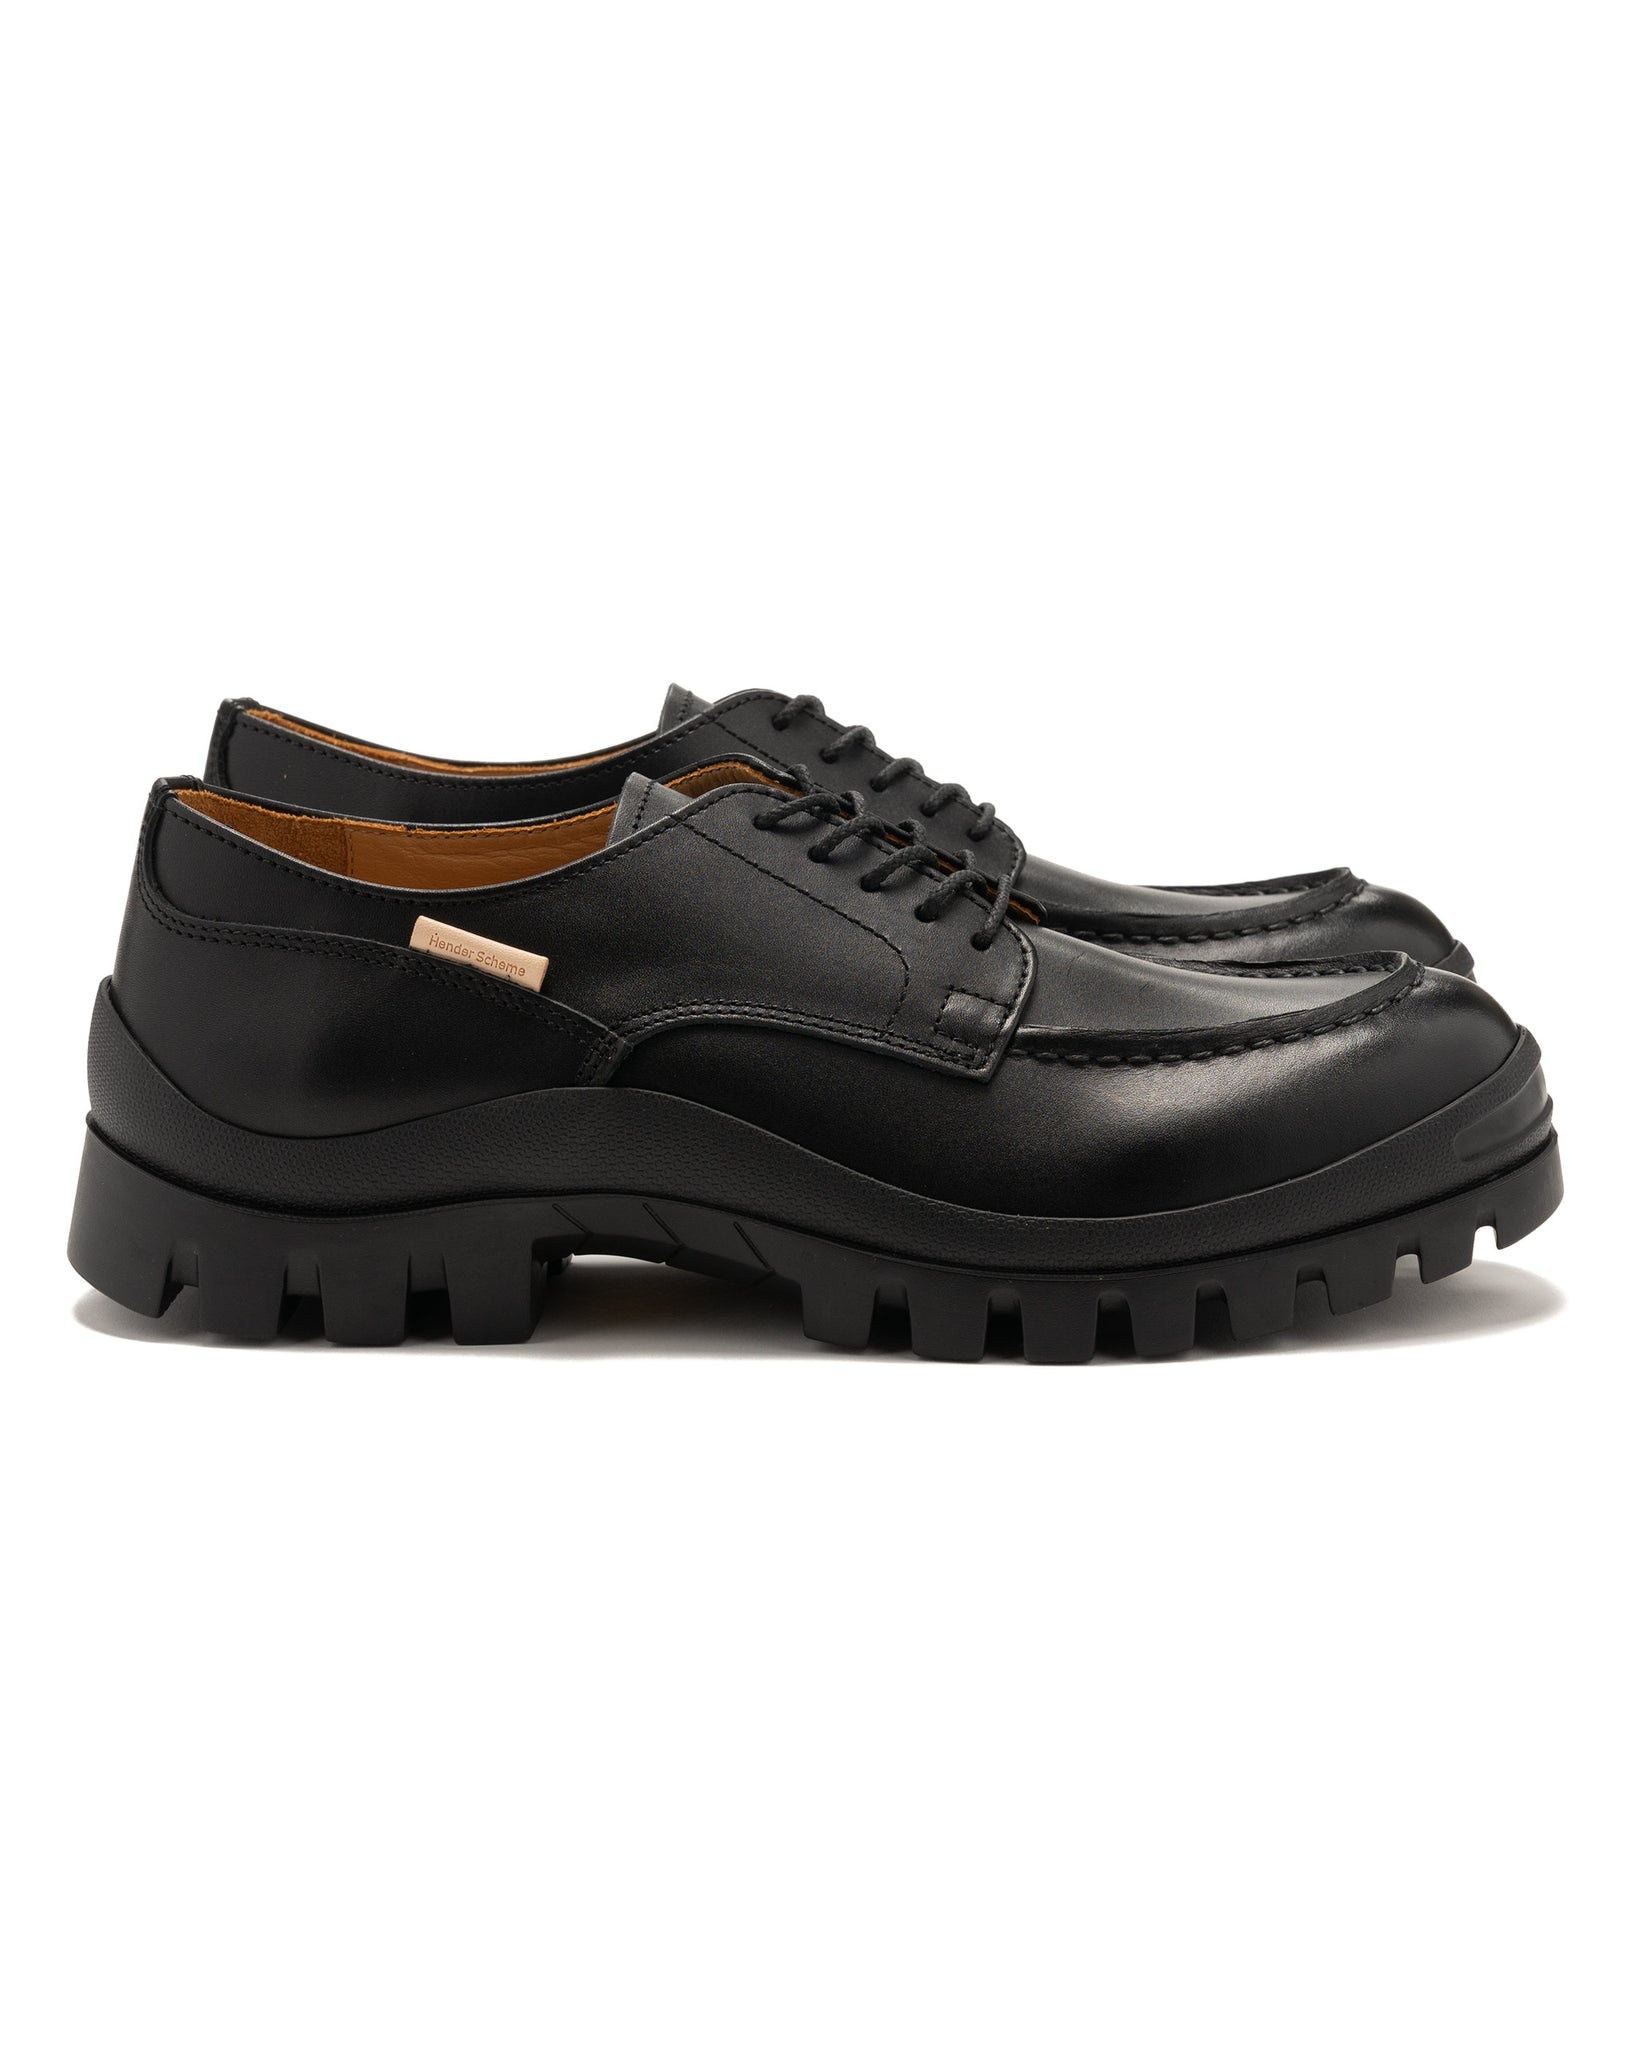 Hender Scheme Derby #2146 Shoes Black | havenshop | REVERSIBLE